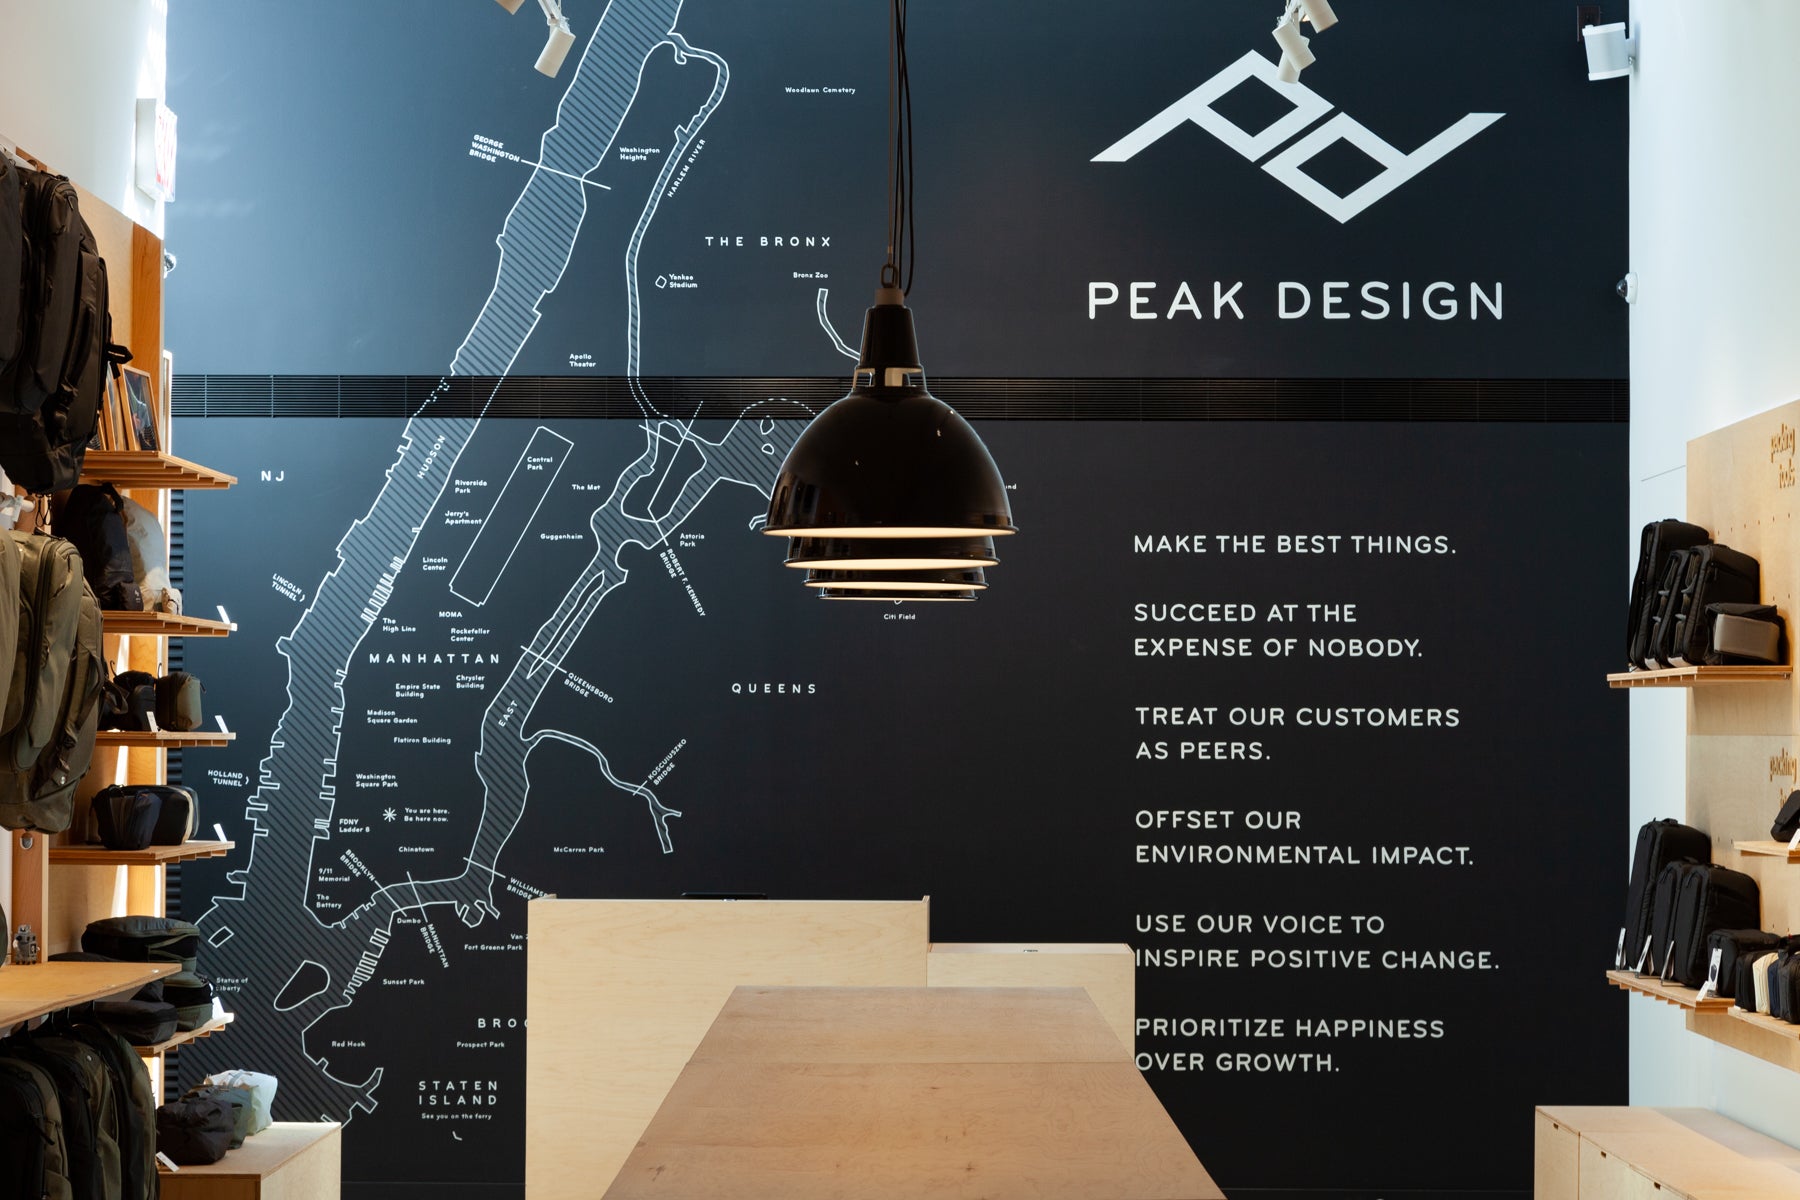 Peak Design Stores  Peak Design Official Site